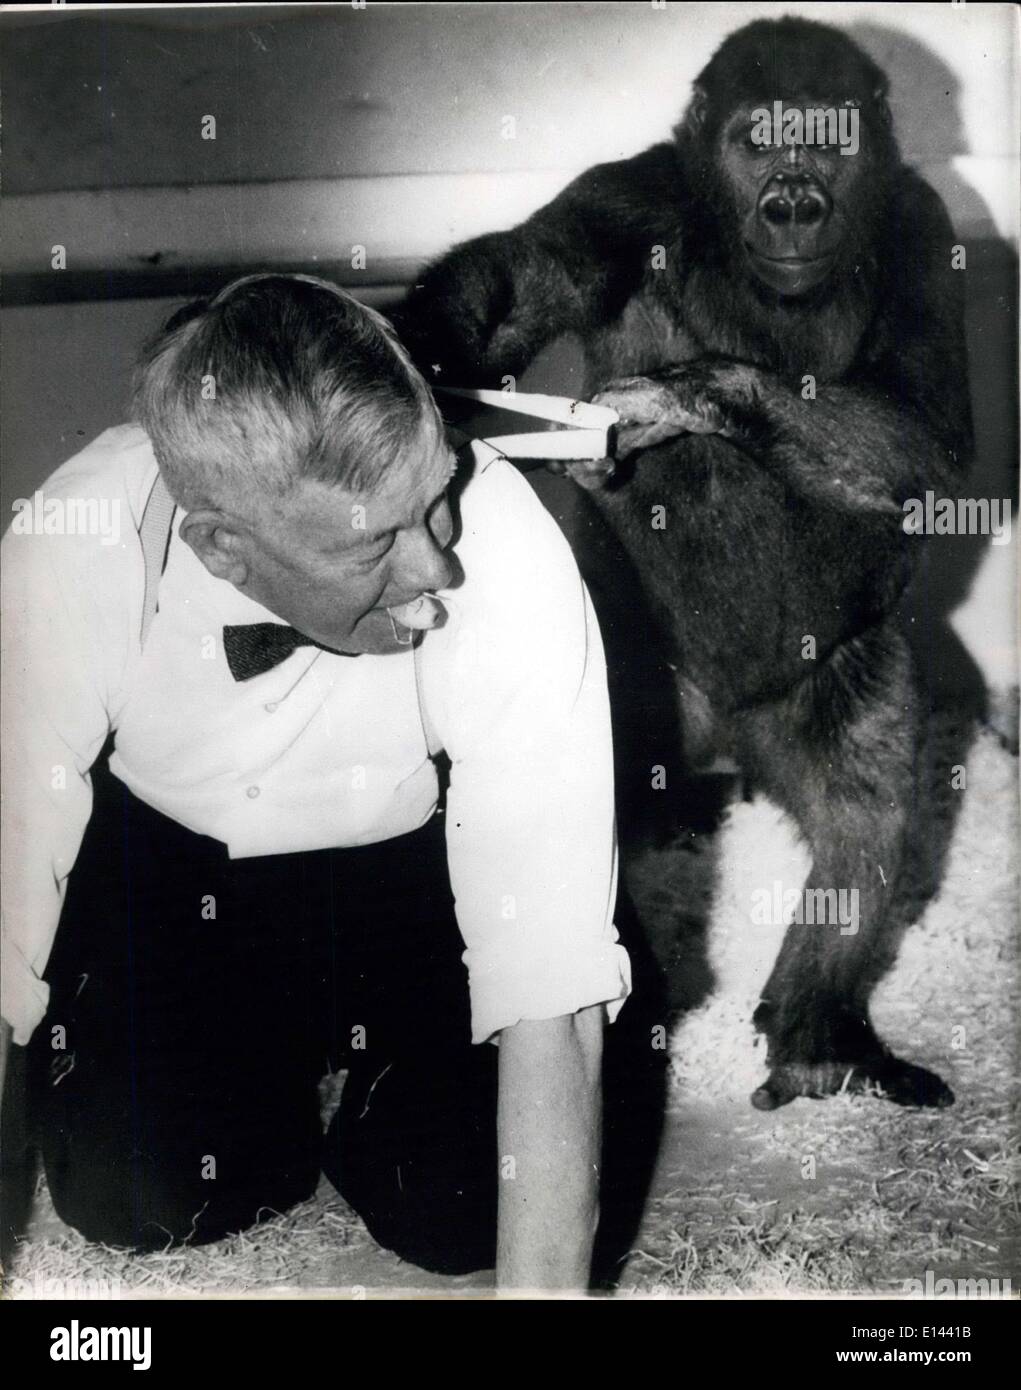 Apr. 04, 2012 - cavalleresco Romp...da George...Il più popolare detenuti della zoo a Sydney in Australia - sono George e Maria i gorilla....i visitatori allo Zoo sempre amano fermarsi a guardare le loro buffonate...il loro grande pal - è Sir Edward Hallstrom - l'on. Il direttore di vita Taronga Park Zoological Trusy -Sydney...Quando egli entra nella loro gabbia - di un diritto a tempo reale è avuto da tutti....mostra fotografica di George detiene - Sir Edward dalla sua parentesi - come quest'ultimo esamina intorno alla gabbia - tenendo una banana nella sua bocca - come un dono per una cooperativa di George. Foto Stock